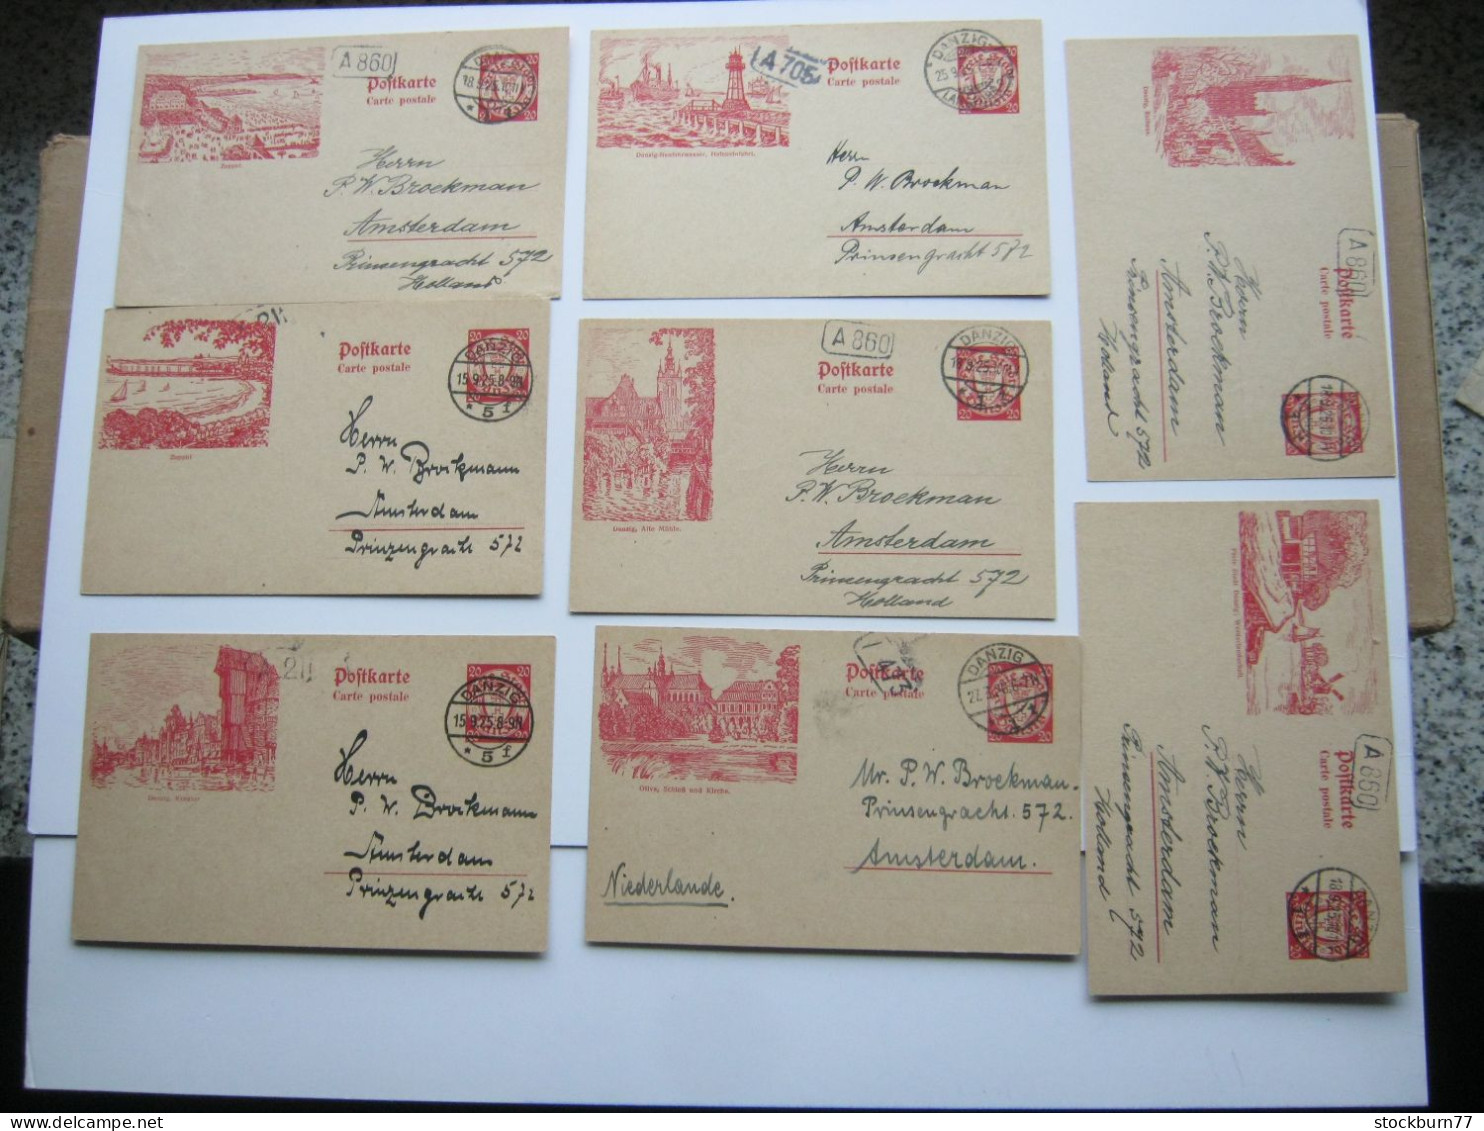 DANZIG ,    1925 , 20 Pfg. Bildganzsache , 8 Karten Ins Ausland Verschickt ( Niederlande), Sehr Selten ! - Interi Postali